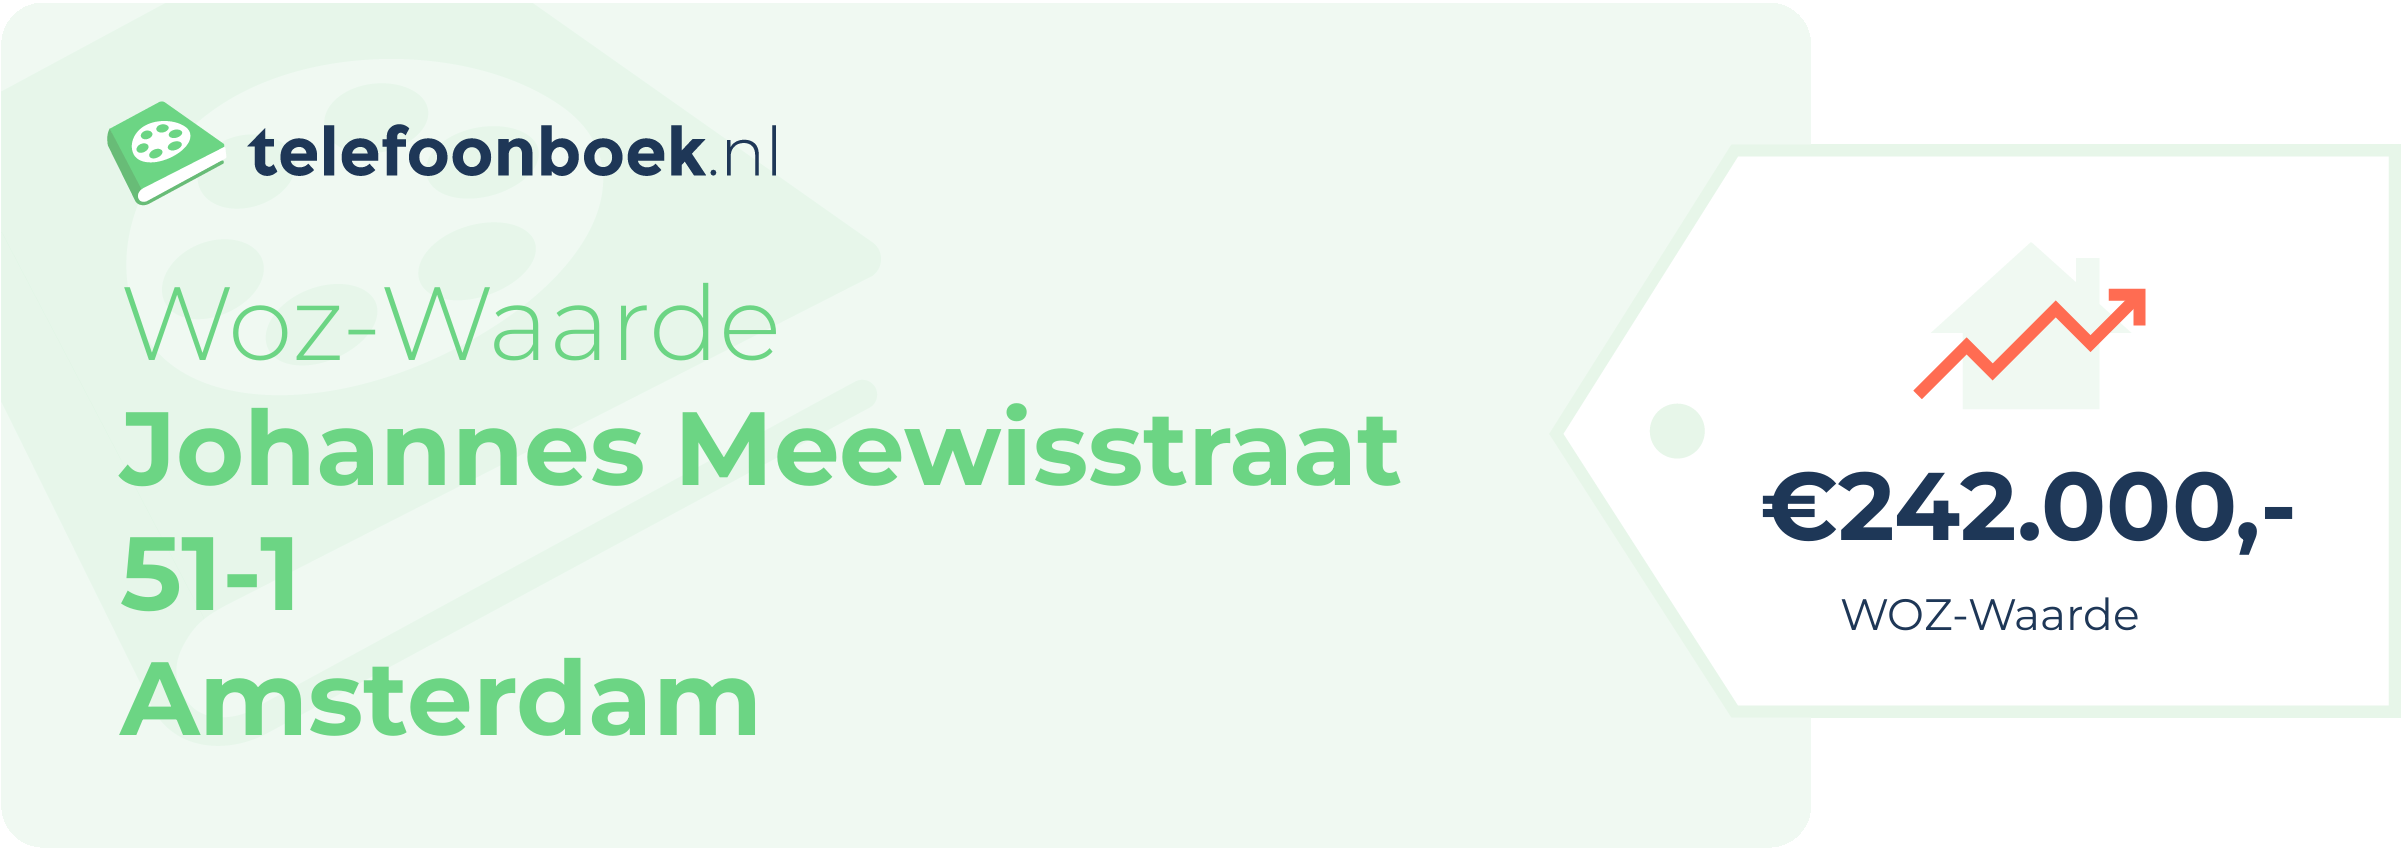 WOZ-waarde Johannes Meewisstraat 51-1 Amsterdam